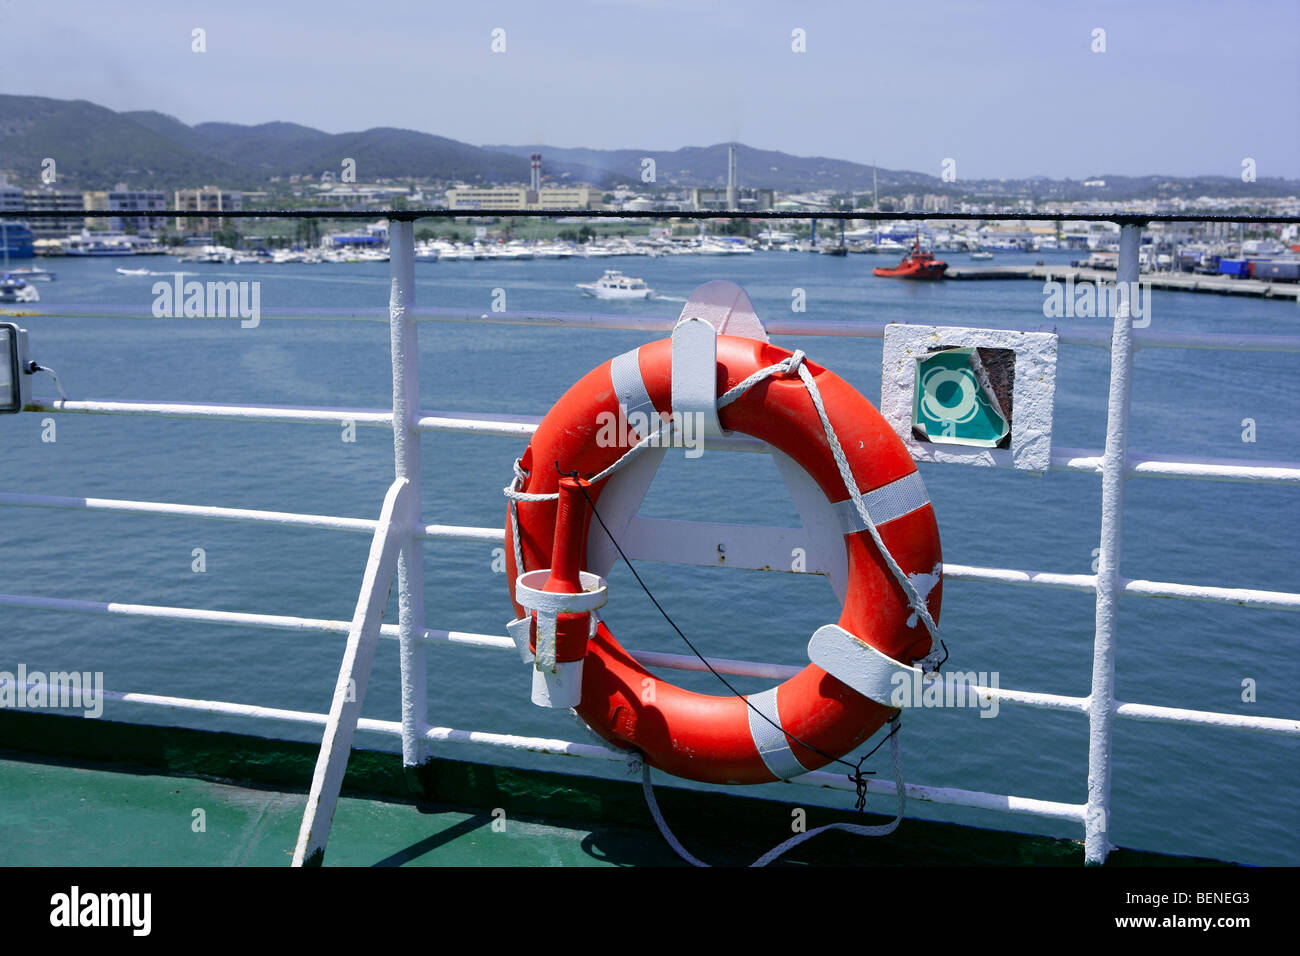 Cruise bateau blanc bleu dans la main courante et la mer Ibiza bouée orange ronde Banque D'Images